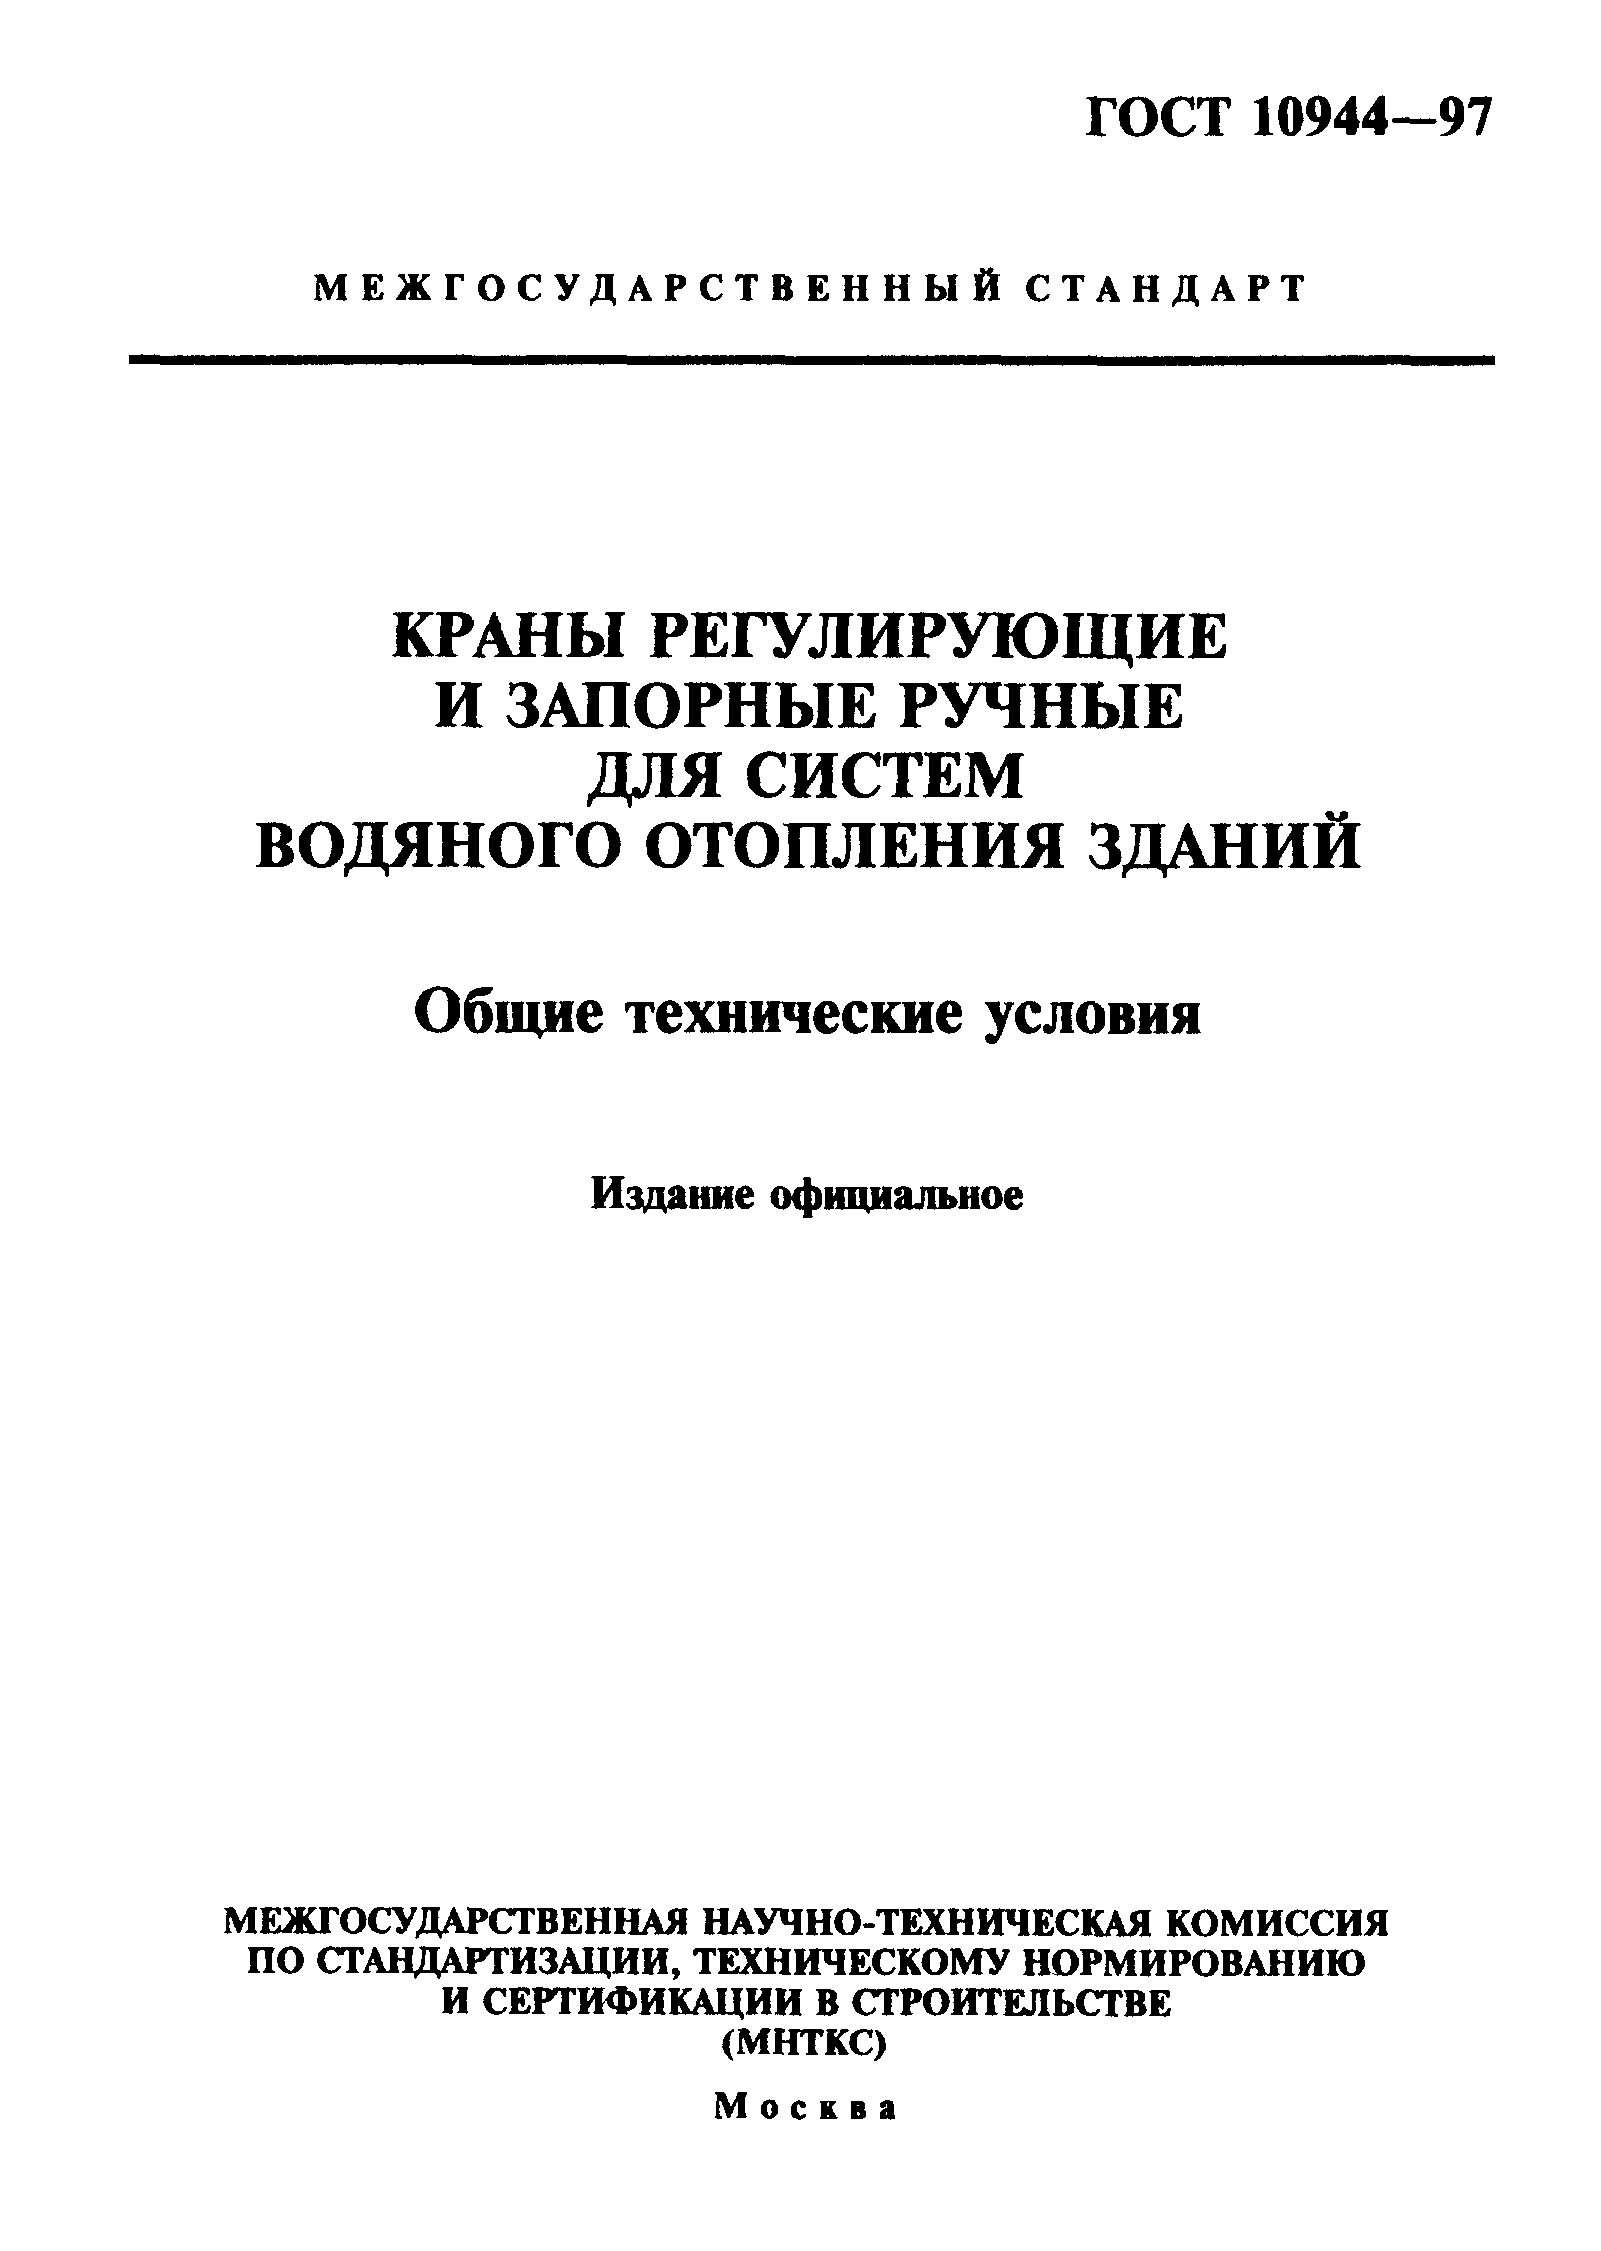 Кран ГОСТ 10944-97